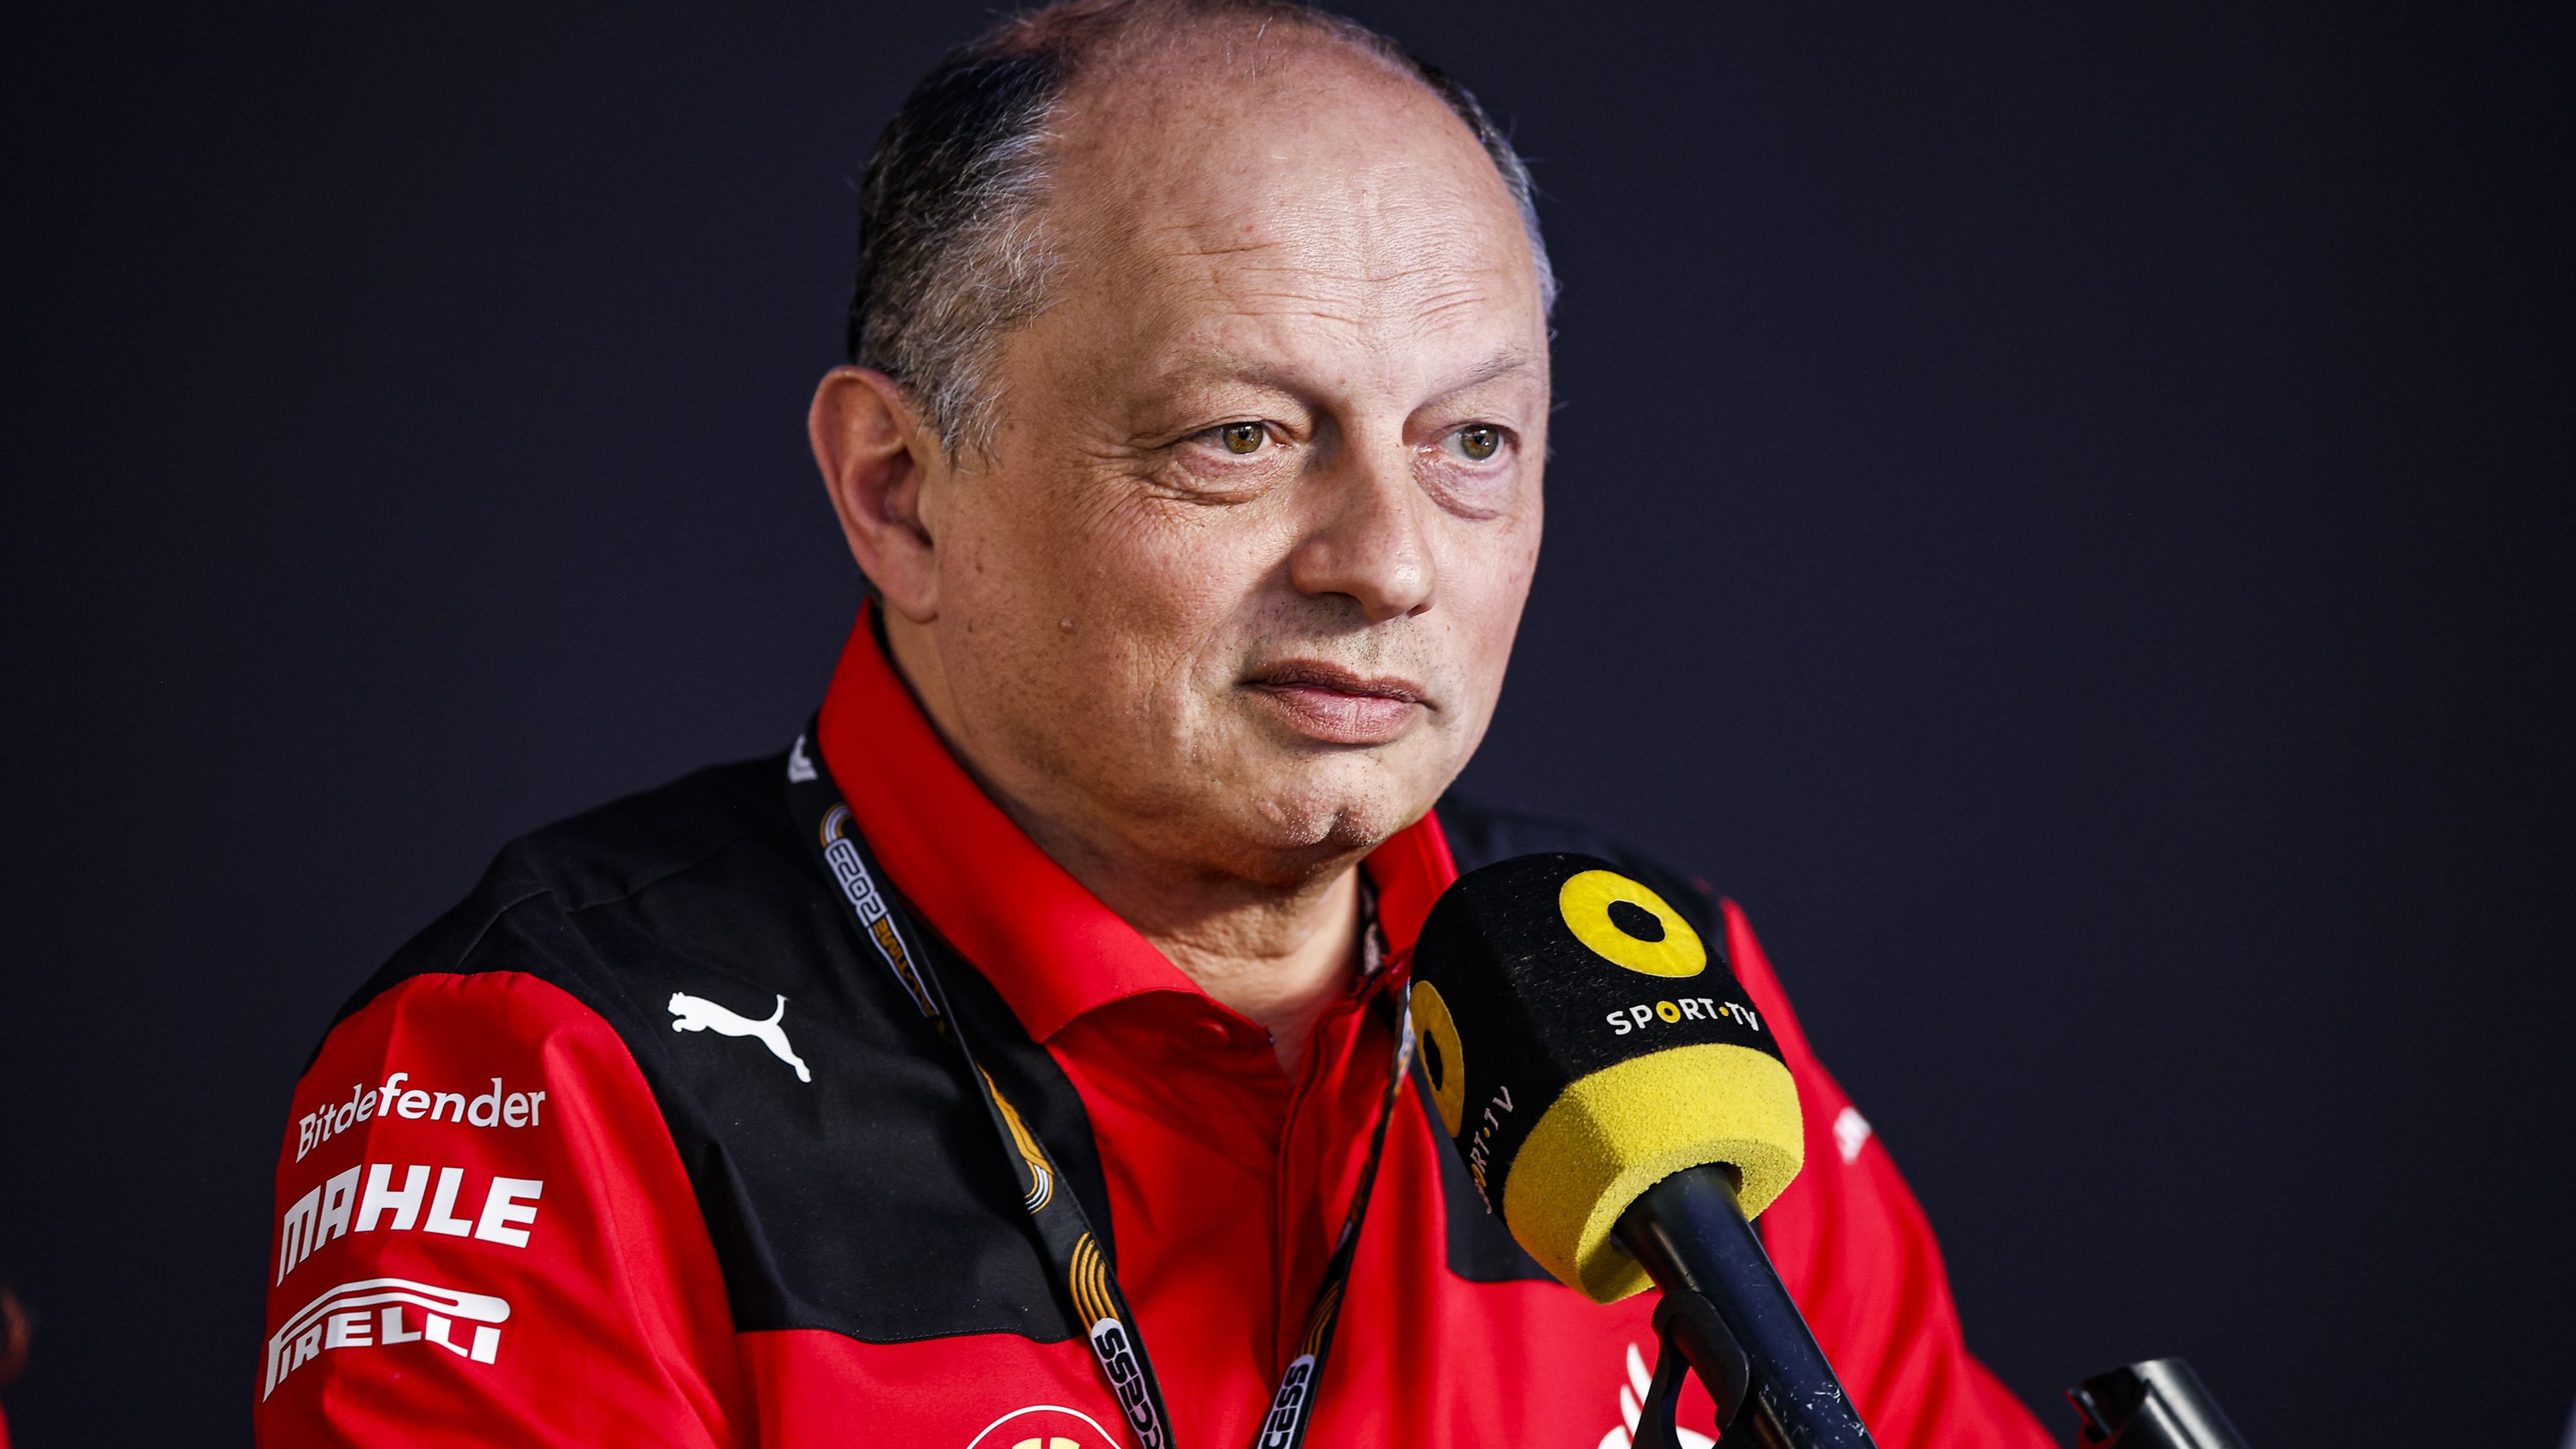 Mi a ménkű folyik a Ferrarinál? Leclerc találkozót kért az elnöktől?